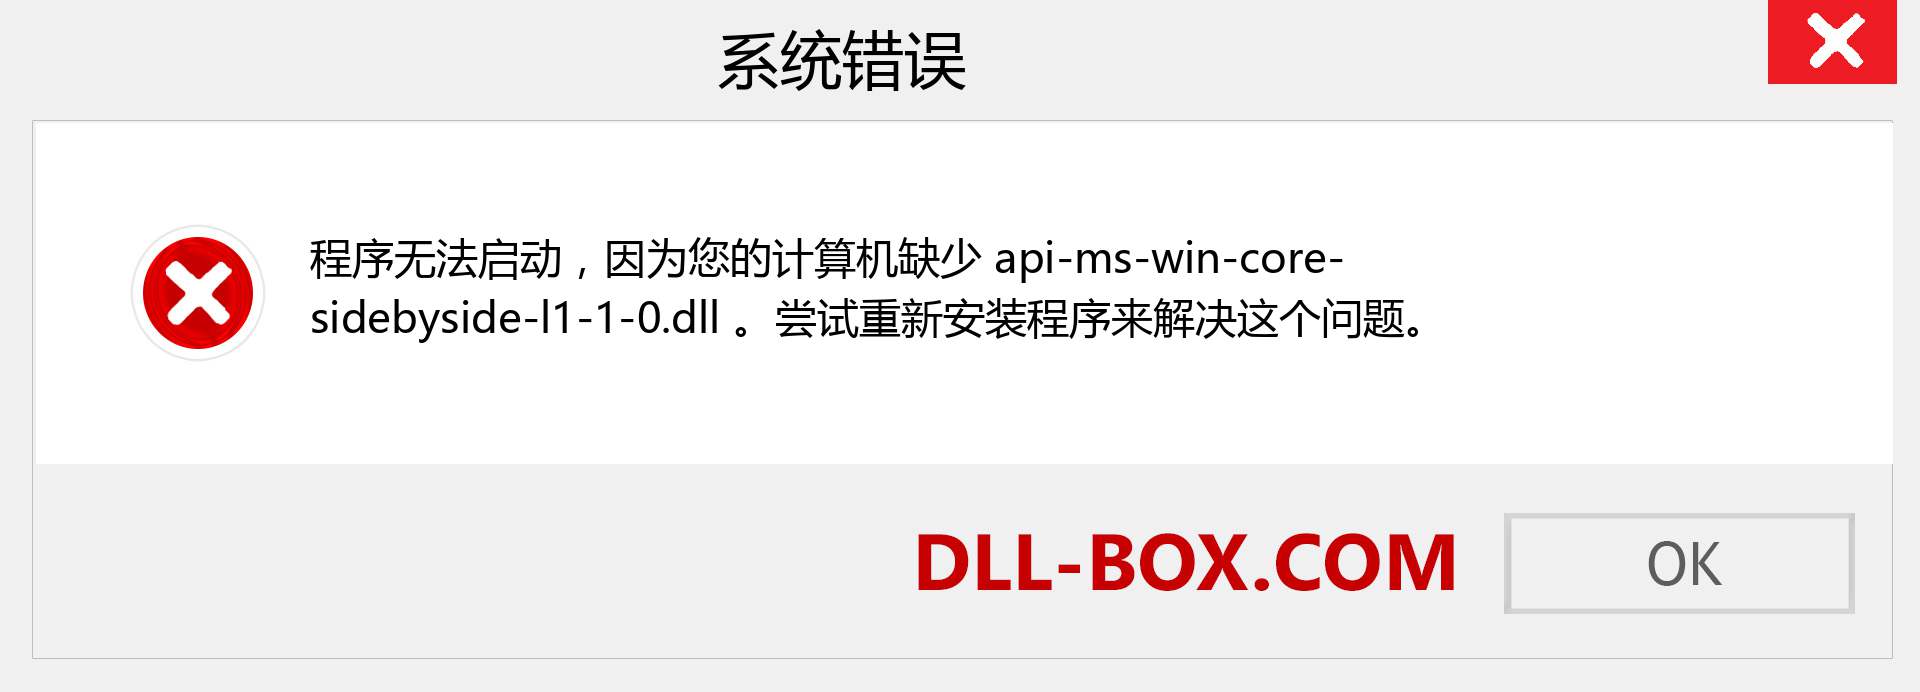 api-ms-win-core-sidebyside-l1-1-0.dll 文件丢失？。 适用于 Windows 7、8、10 的下载 - 修复 Windows、照片、图像上的 api-ms-win-core-sidebyside-l1-1-0 dll 丢失错误